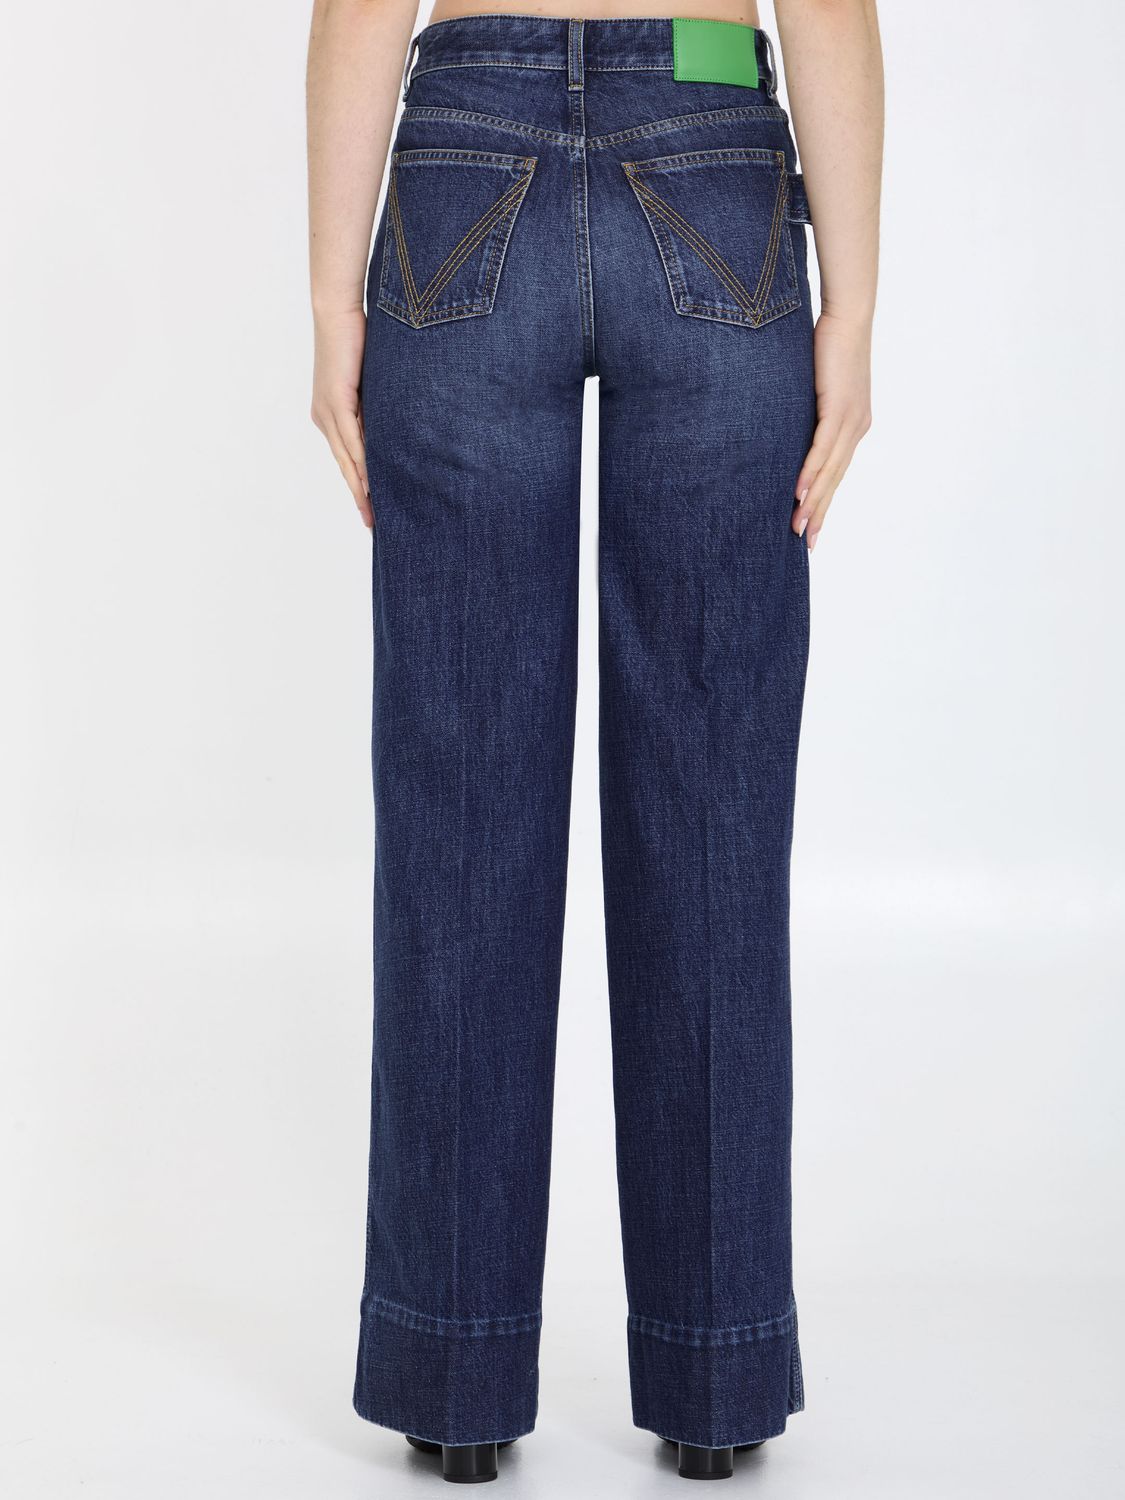 Quần Jeans Denim rộng cạp xanh nhạt cho nữ cho mùa xuân và mùa hè 2021